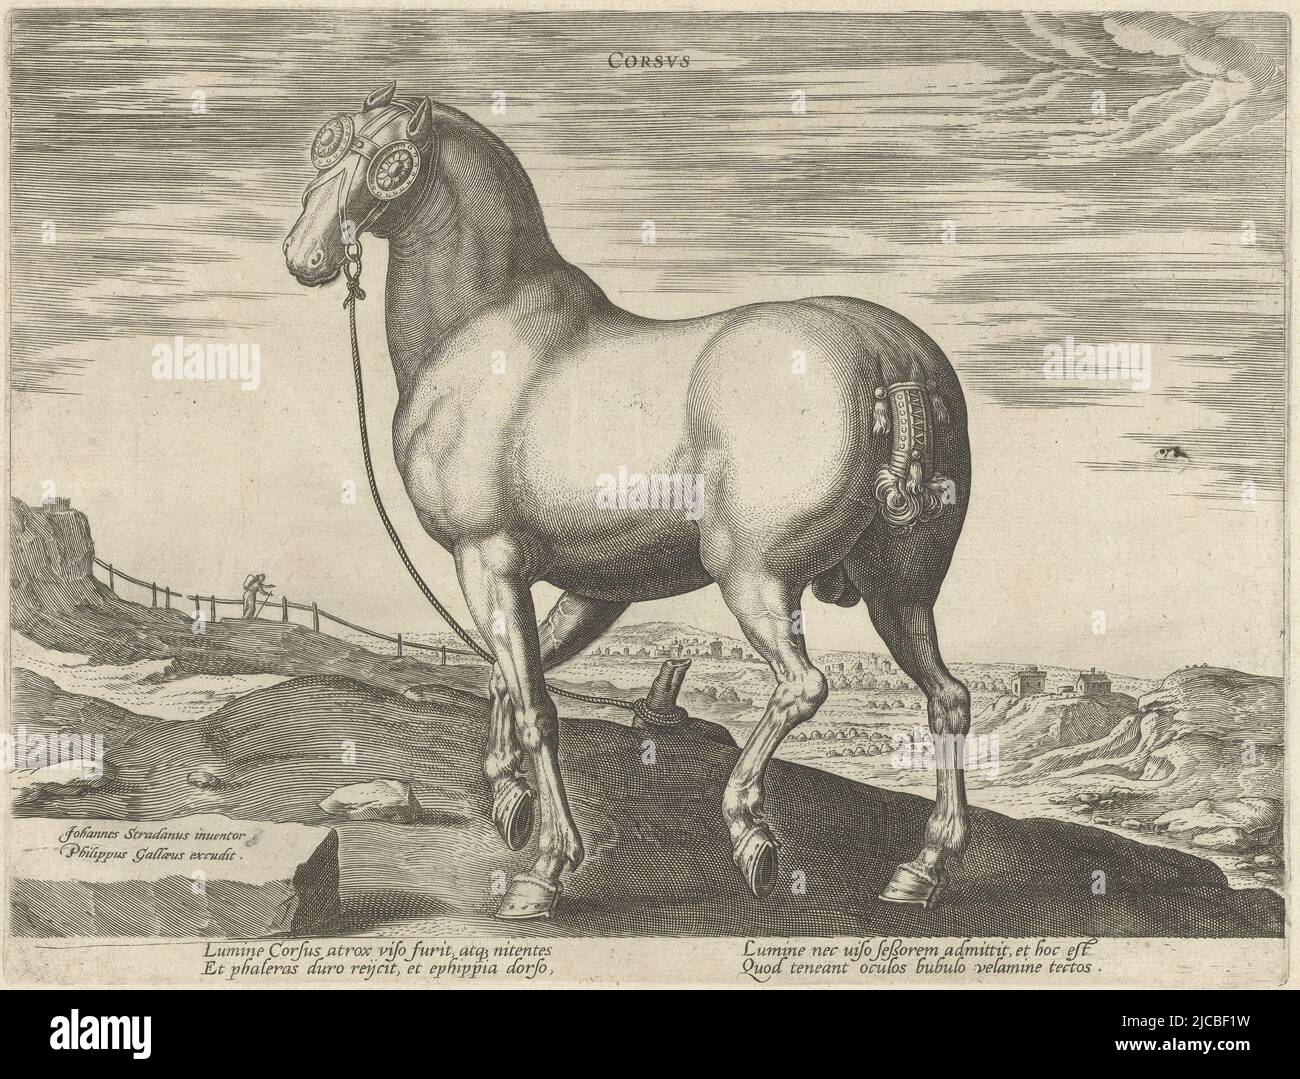 Un cheval Corse, vu en diagonale derrière l'imprimé a une légende latine et fait partie du quatrième volume d'une série de 39 parties sur les races de chevaux des écuries royales de Don Juan d'Autriche, Cheval de Corse le cheval des écuries royales de Don Juan d'Autriche Equile Ioannis Austriaci Caroli , imprimerie: Hendrick Goltzius, (éventuellement), imprimerie: Hans Collaert (I), (éventuellement), Jan van der Straet, (mentionné sur l'objet), imprimerie: Haarlem, imprimerie: Anvers, Florence, Éditeur: Anvers, c. 1578 - c. 1580, papier, gravure, l 265 mm × h 200 mm Banque D'Images